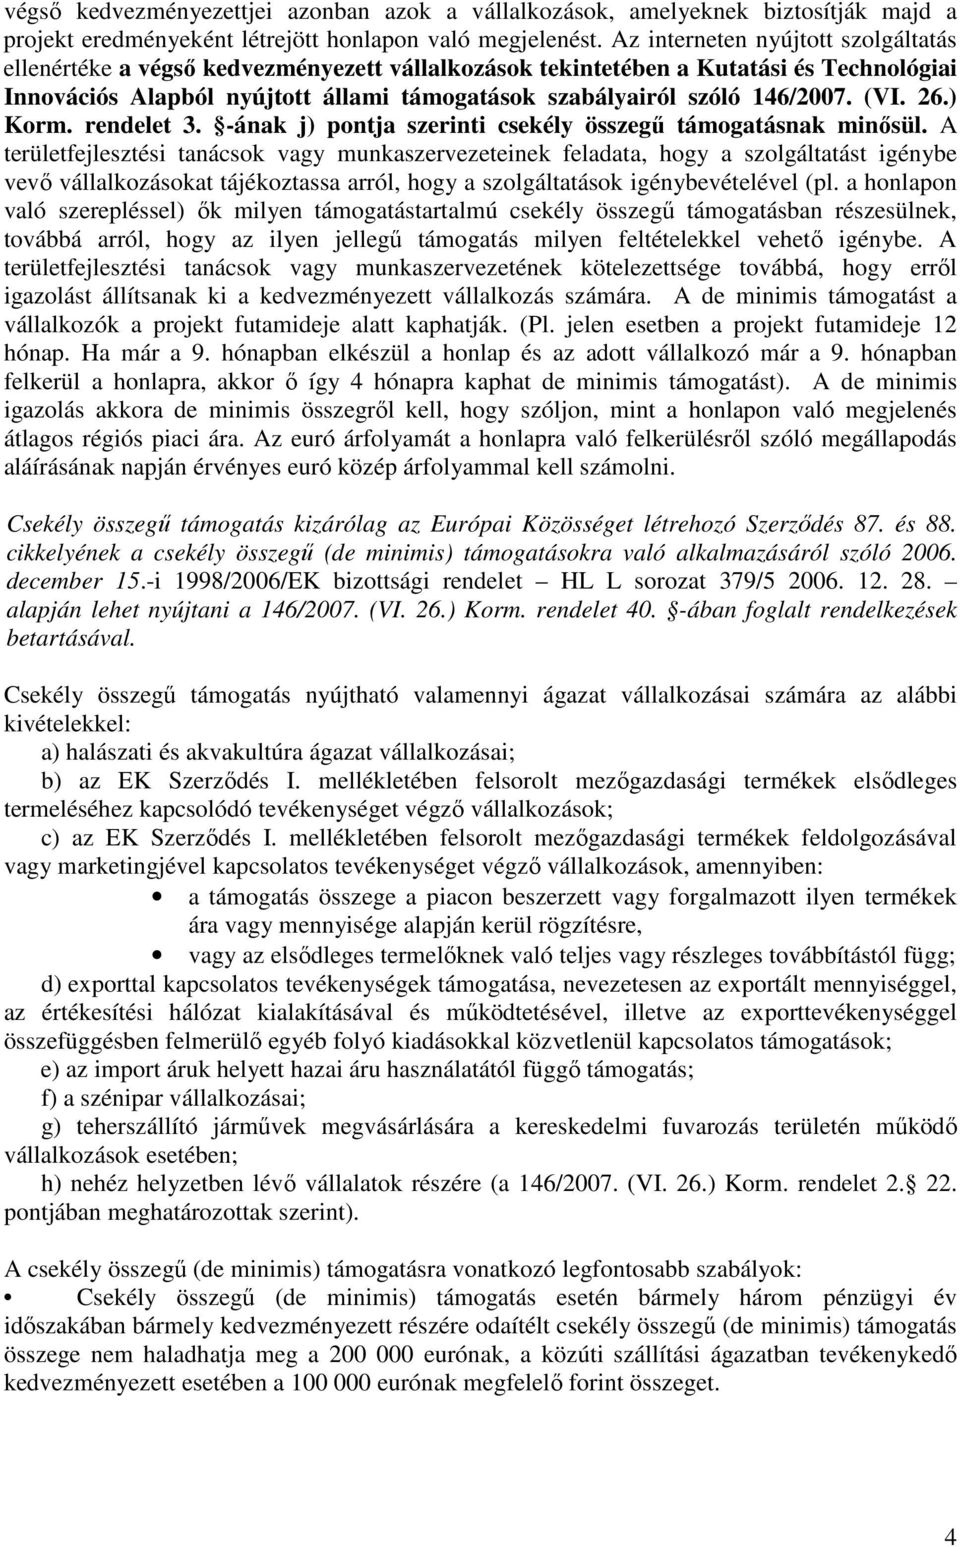 146/2007. (VI. 26.) Korm. rendelet 3. -ának j) pontja szerinti csekély összegő támogatásnak minısül.